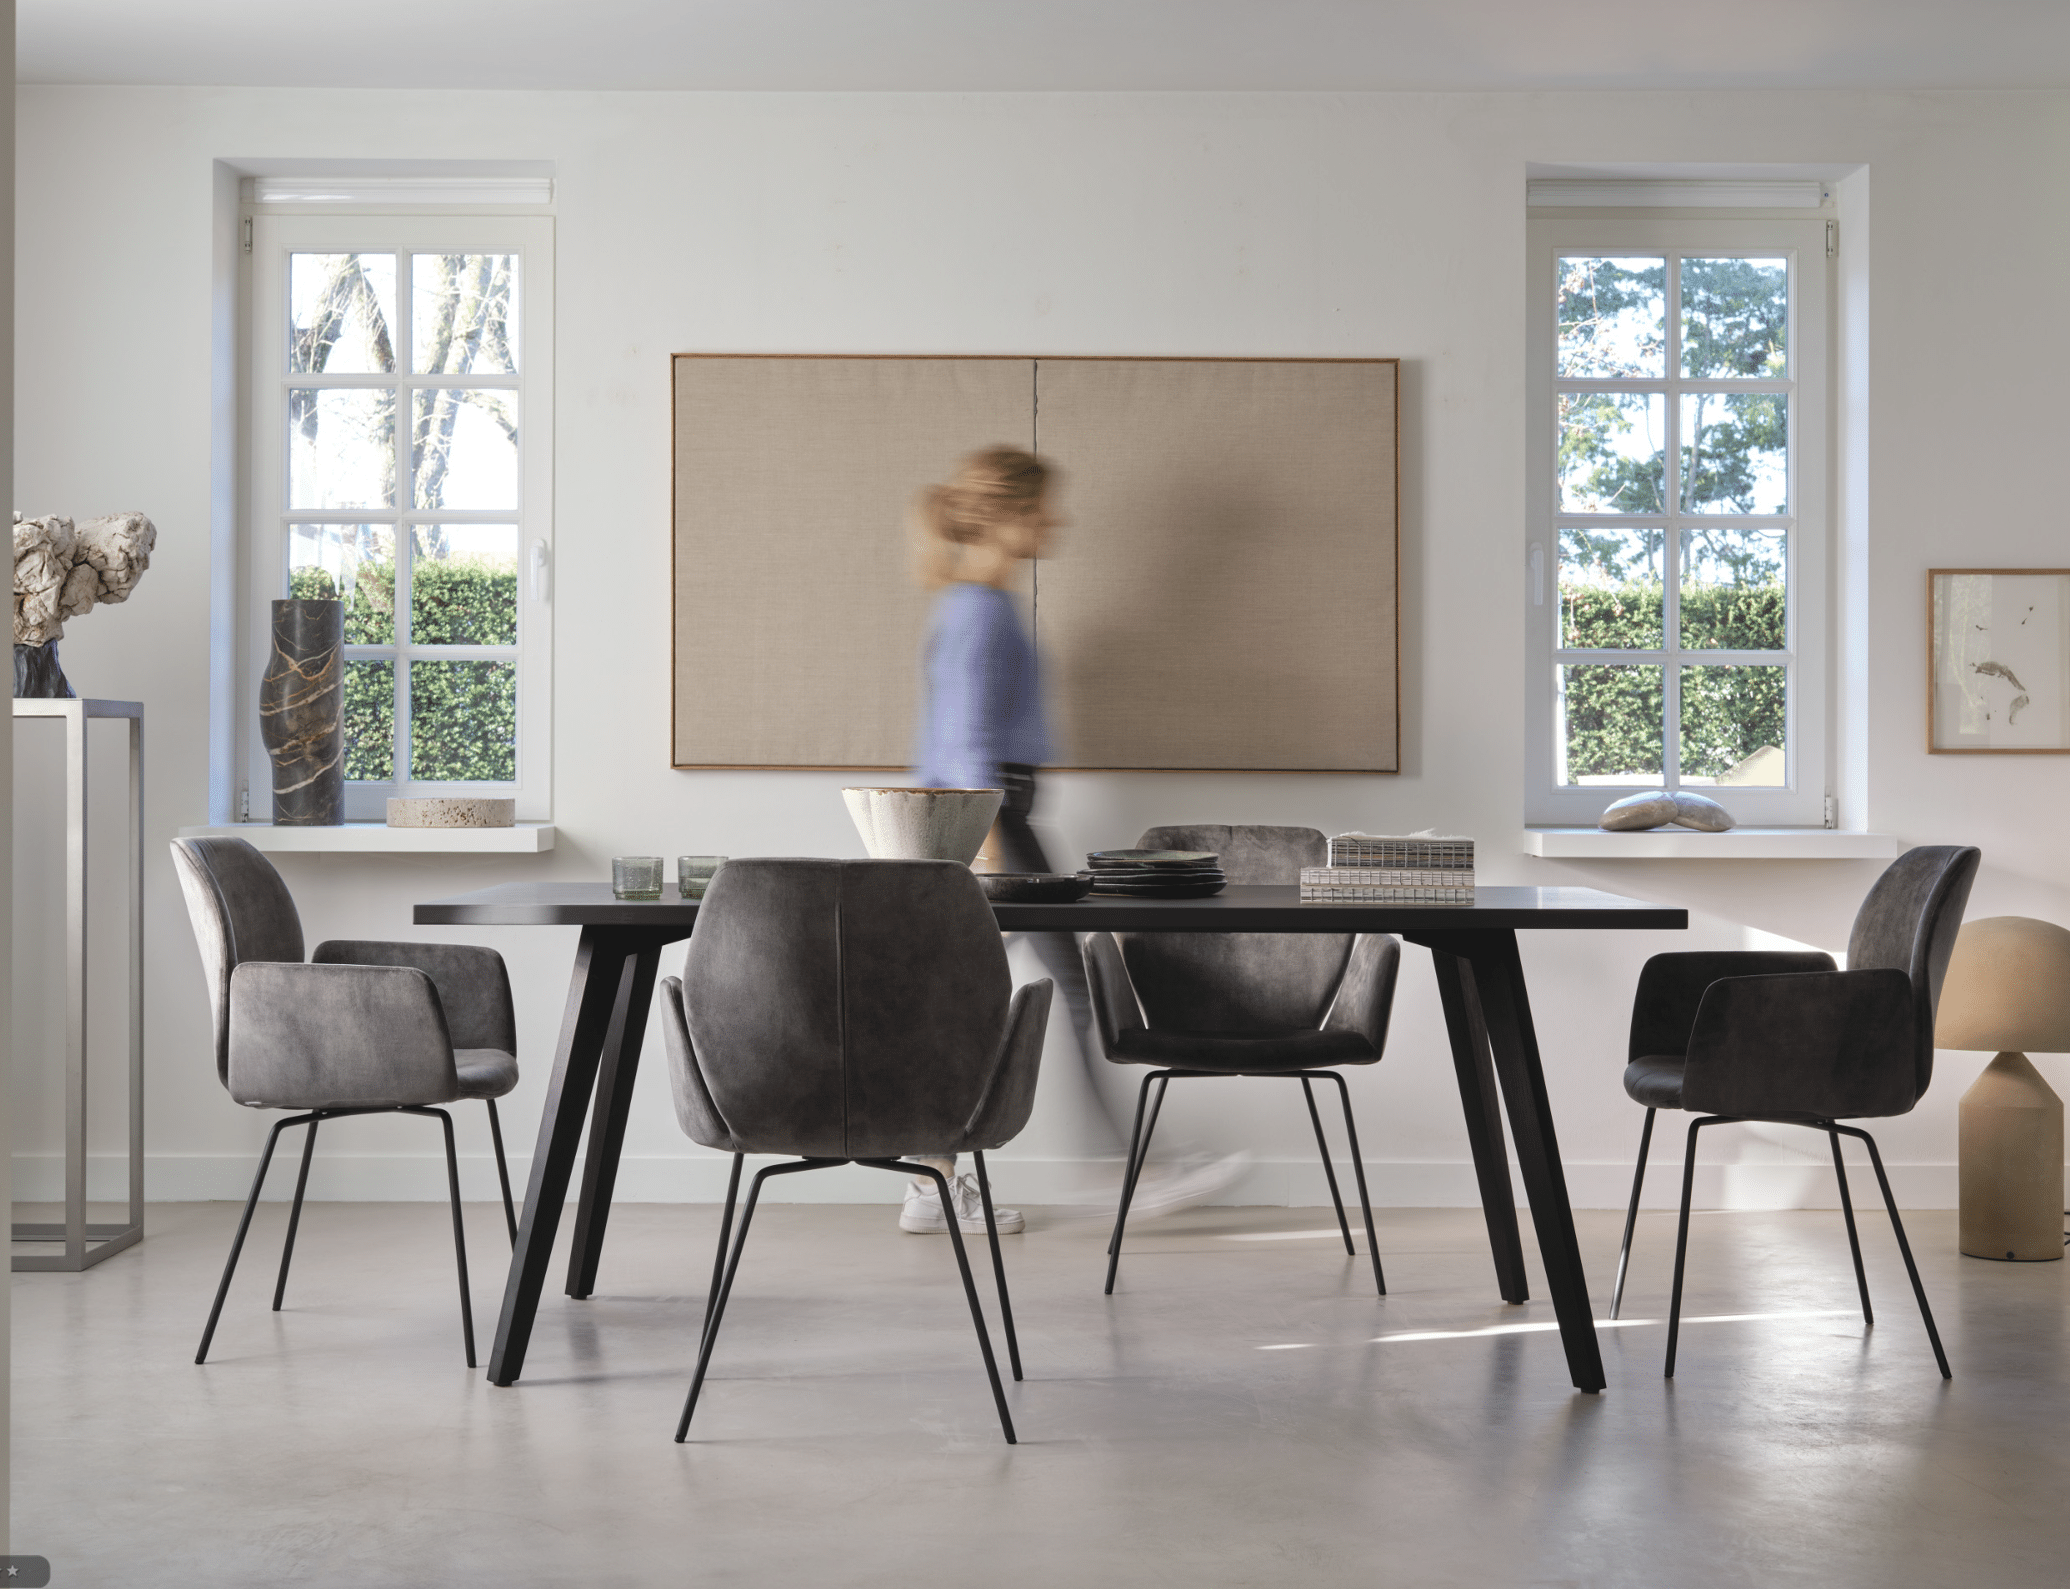 WOHNHAUS Grill & Ronacher zeigt eine Essgruppe von Mobitec Systems, bestehend aus einem Esstisch aus dunklem Holz und Stühlen mit Stoffbezug und schwarzen Metallfüßen.